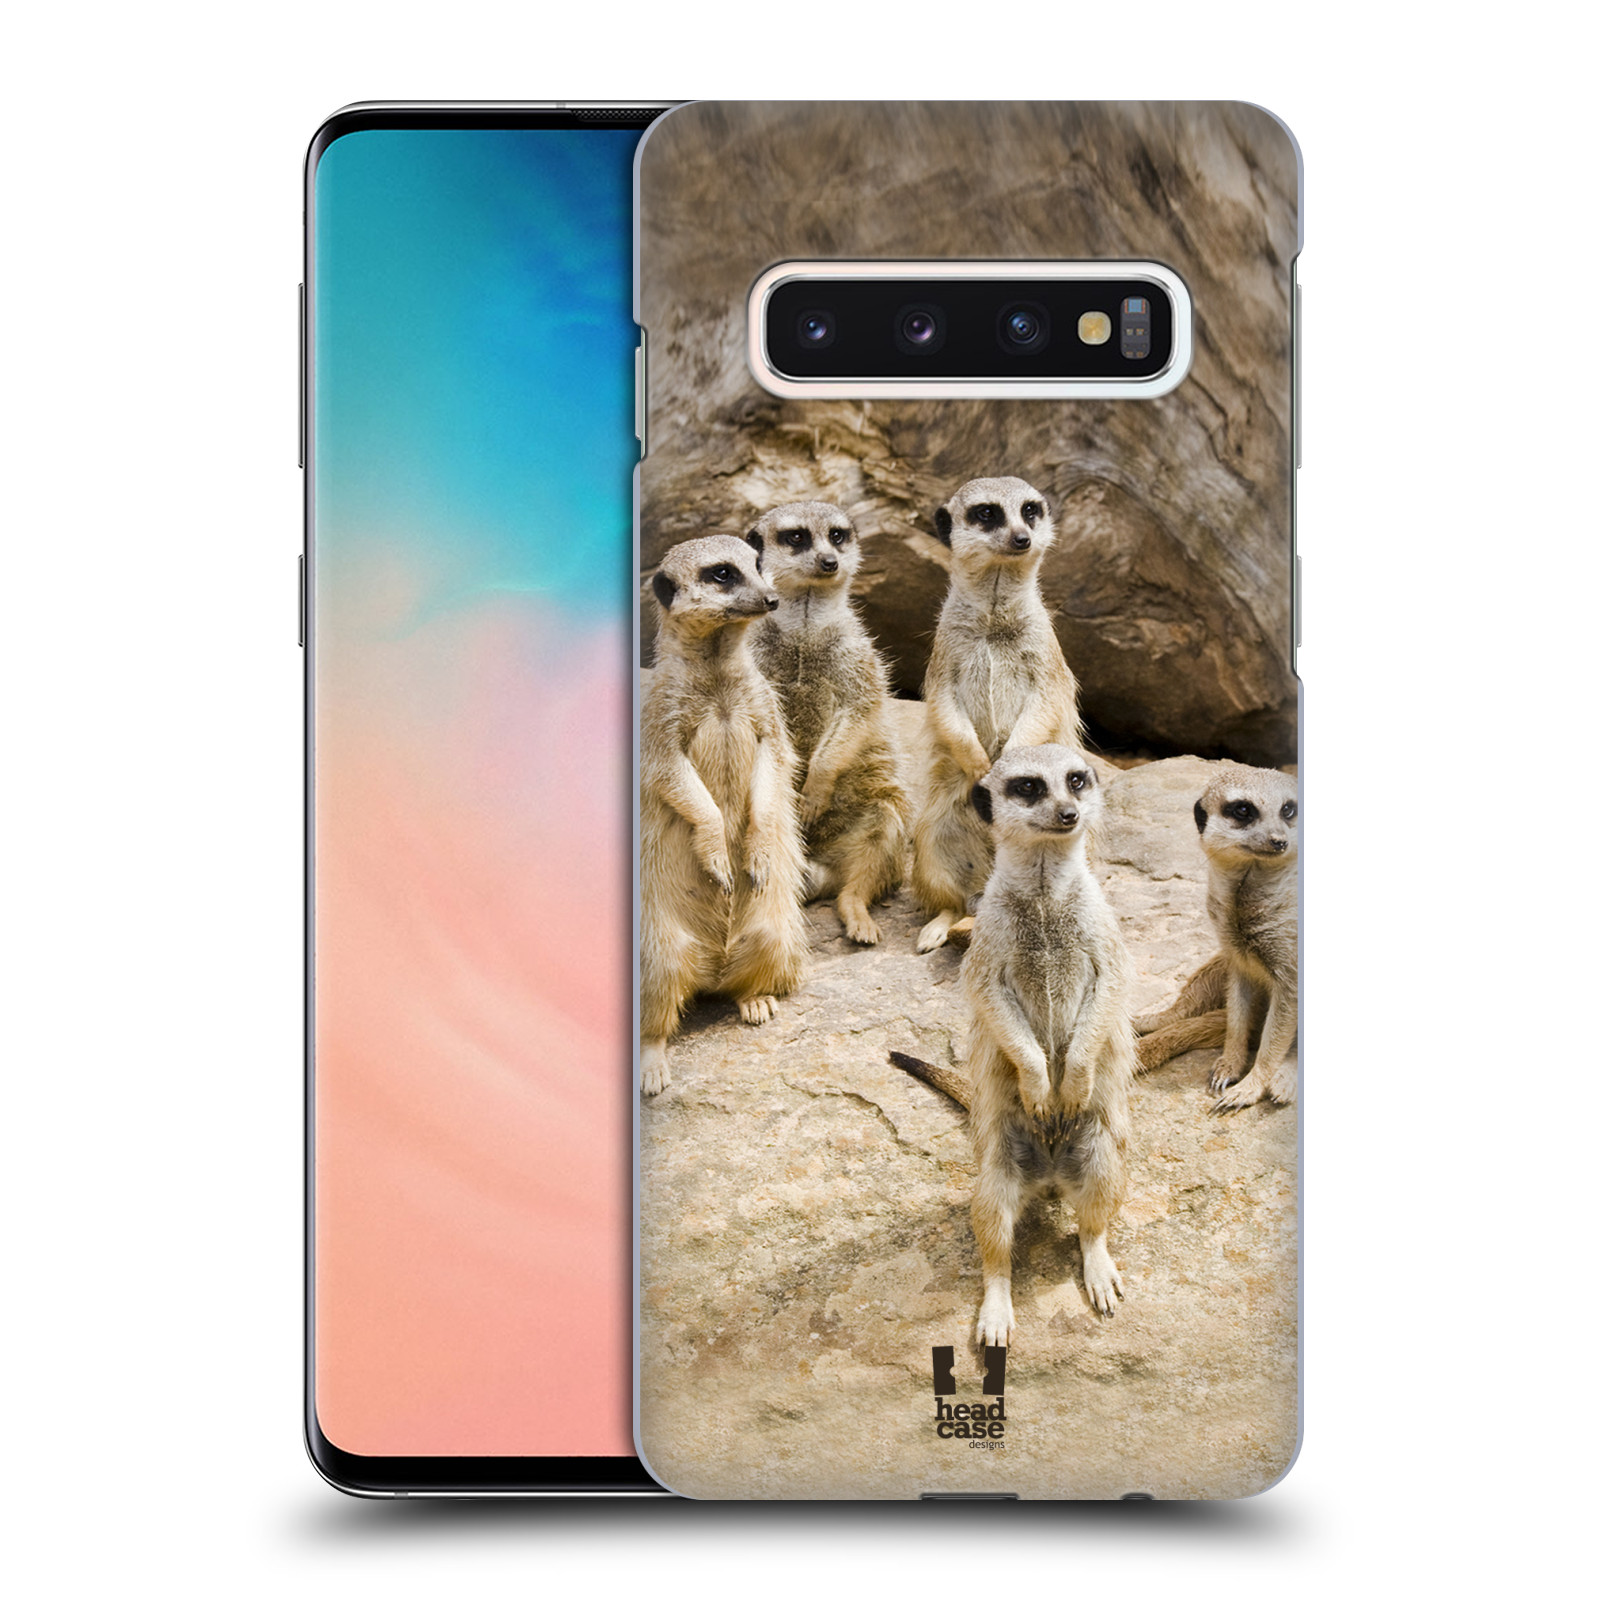 Zadní obal pro mobil Samsung Galaxy S10 - HEAD CASE - Svět zvířat roztomilé surikaty